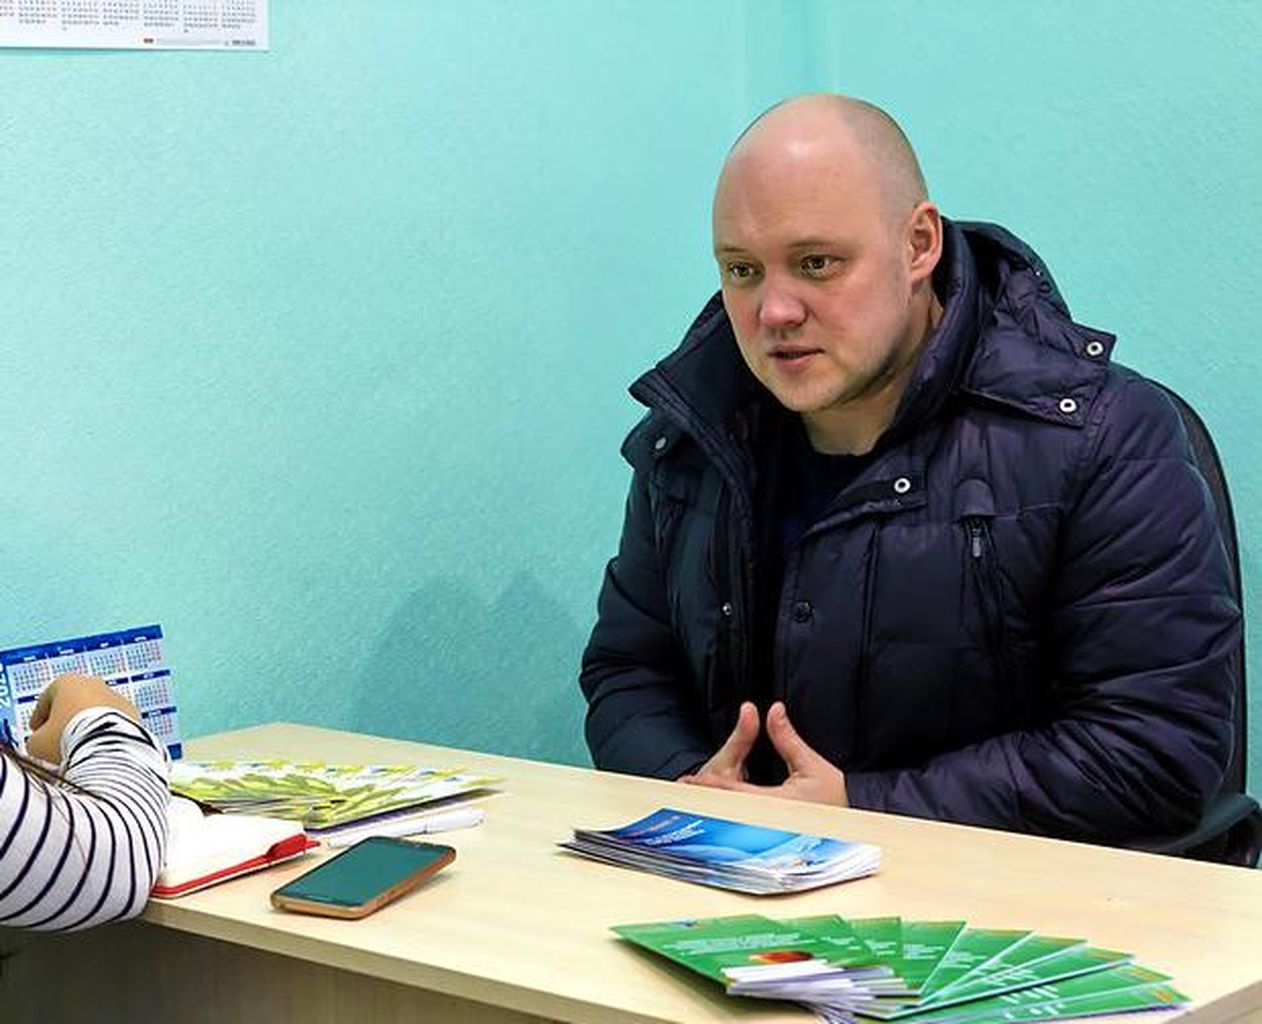 В Краснотурьинске открылся кабинет ассоциации “Урал без наркотиков”. Рассказываем, кому это нужно